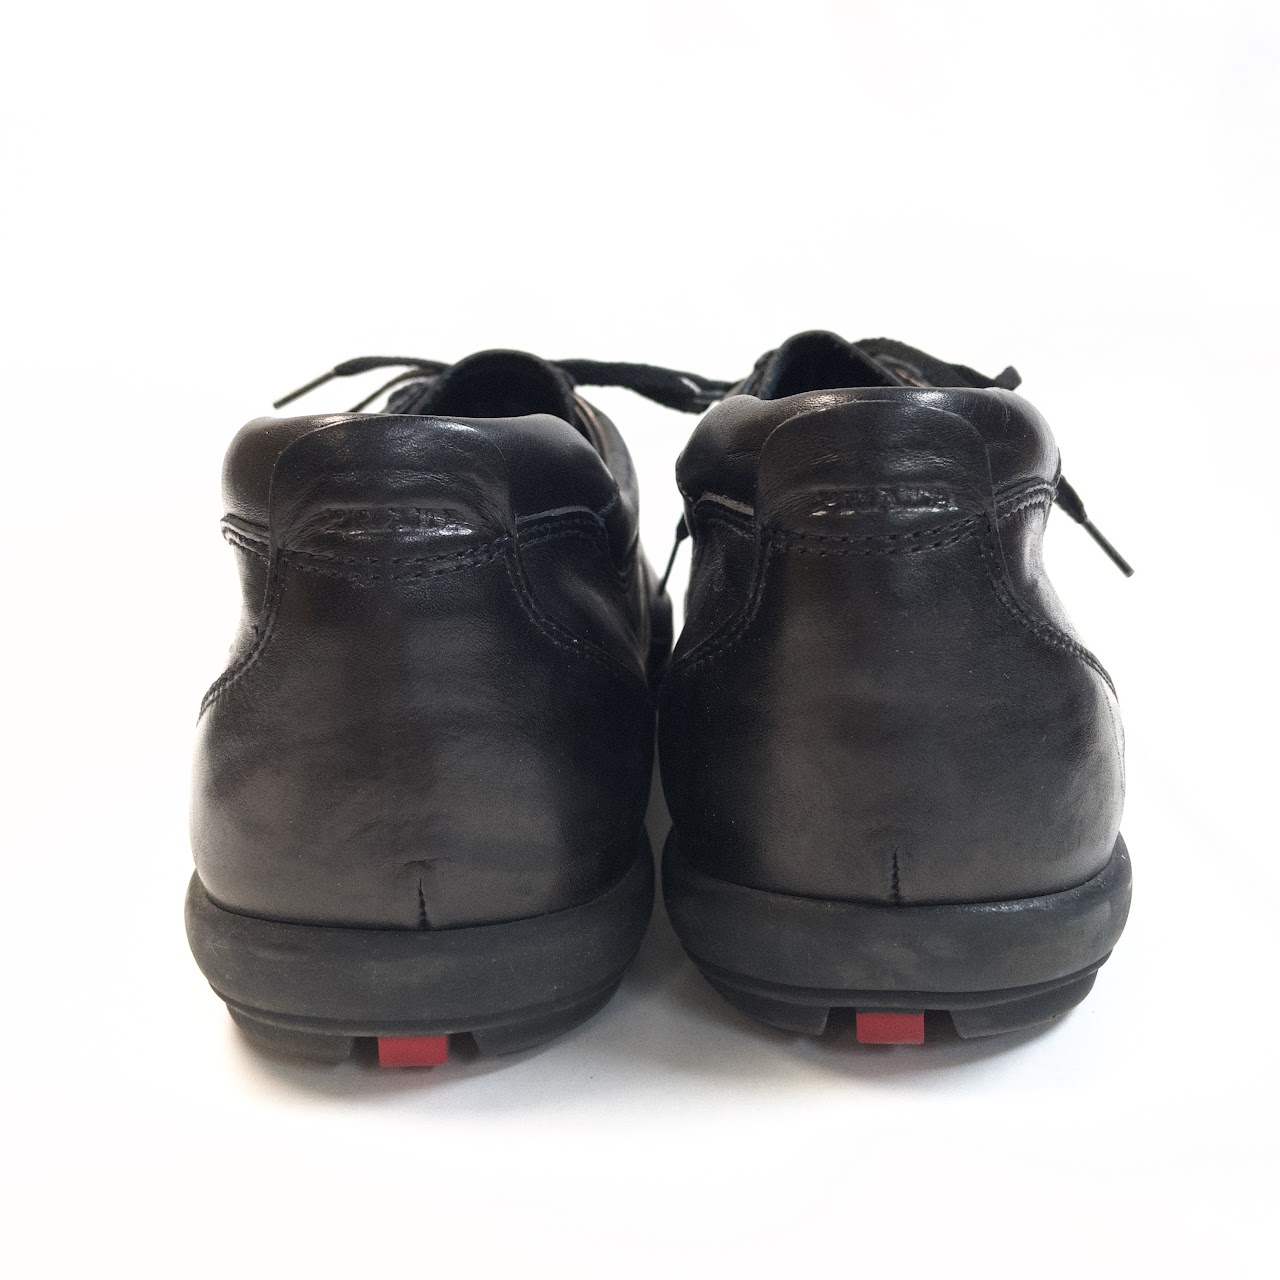 Prada Calzature Uomo Sneakers